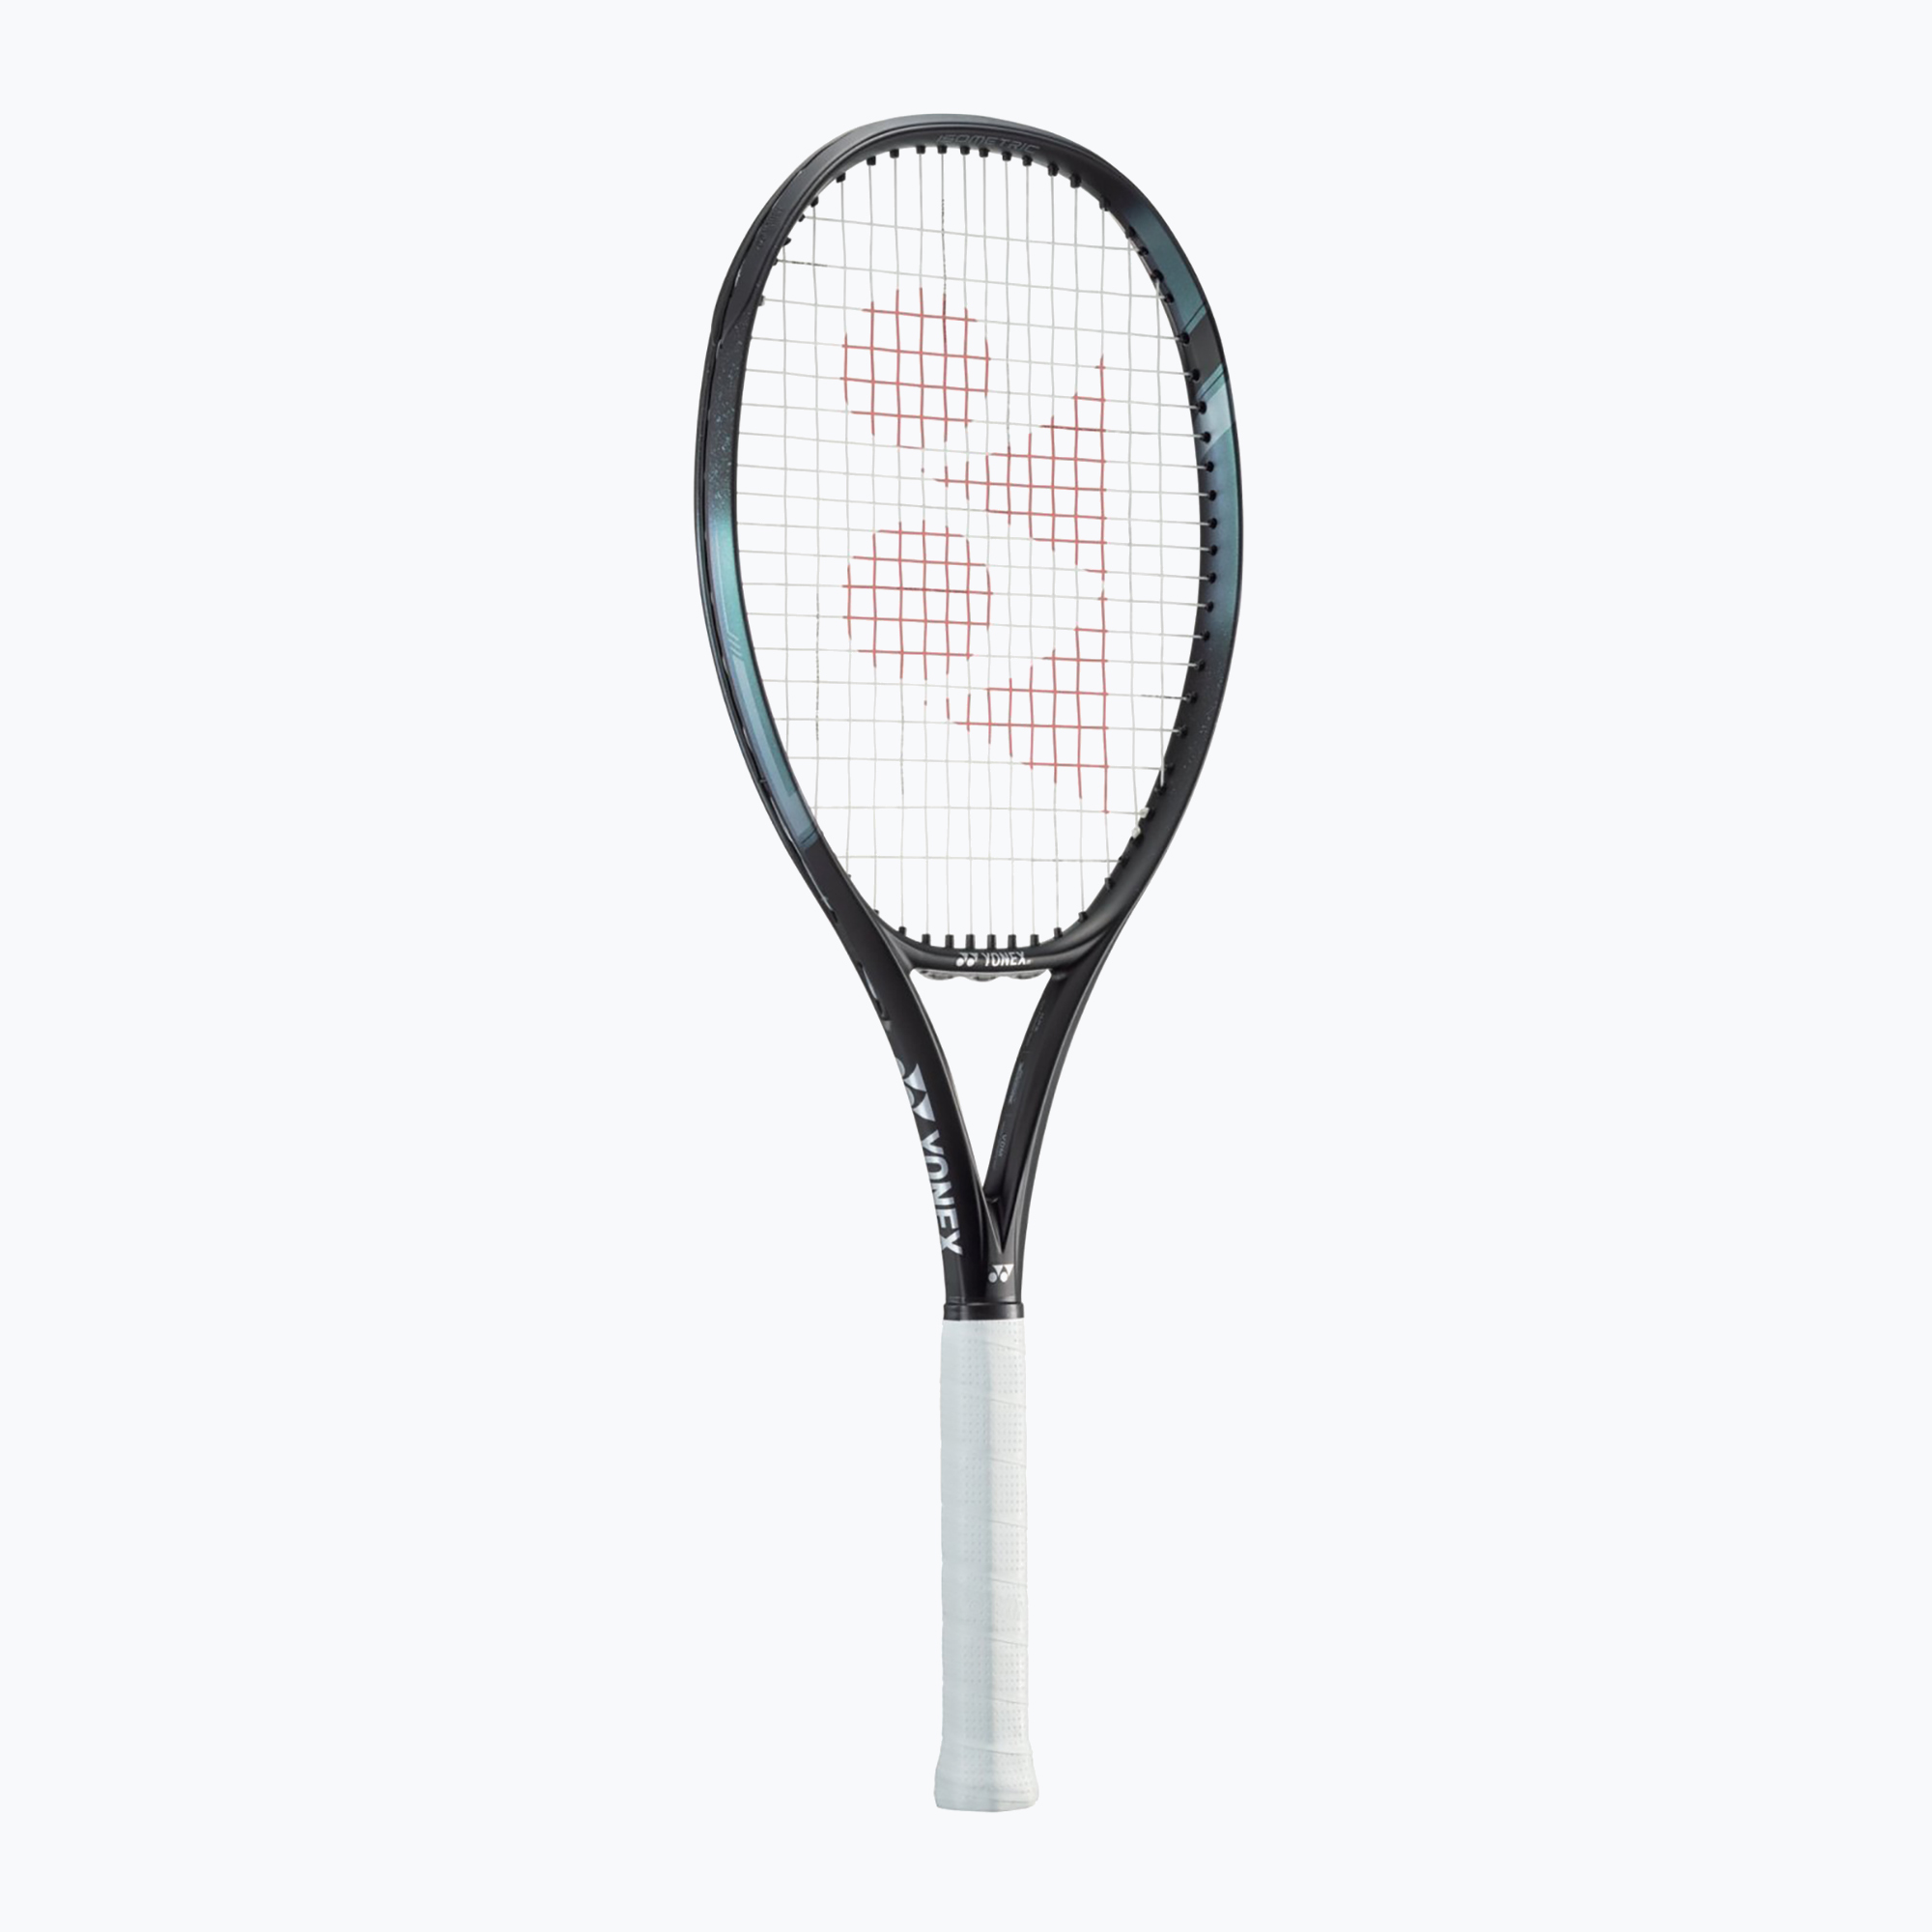 Rachetă de tenis YONEX Ezone 98 aqua/black